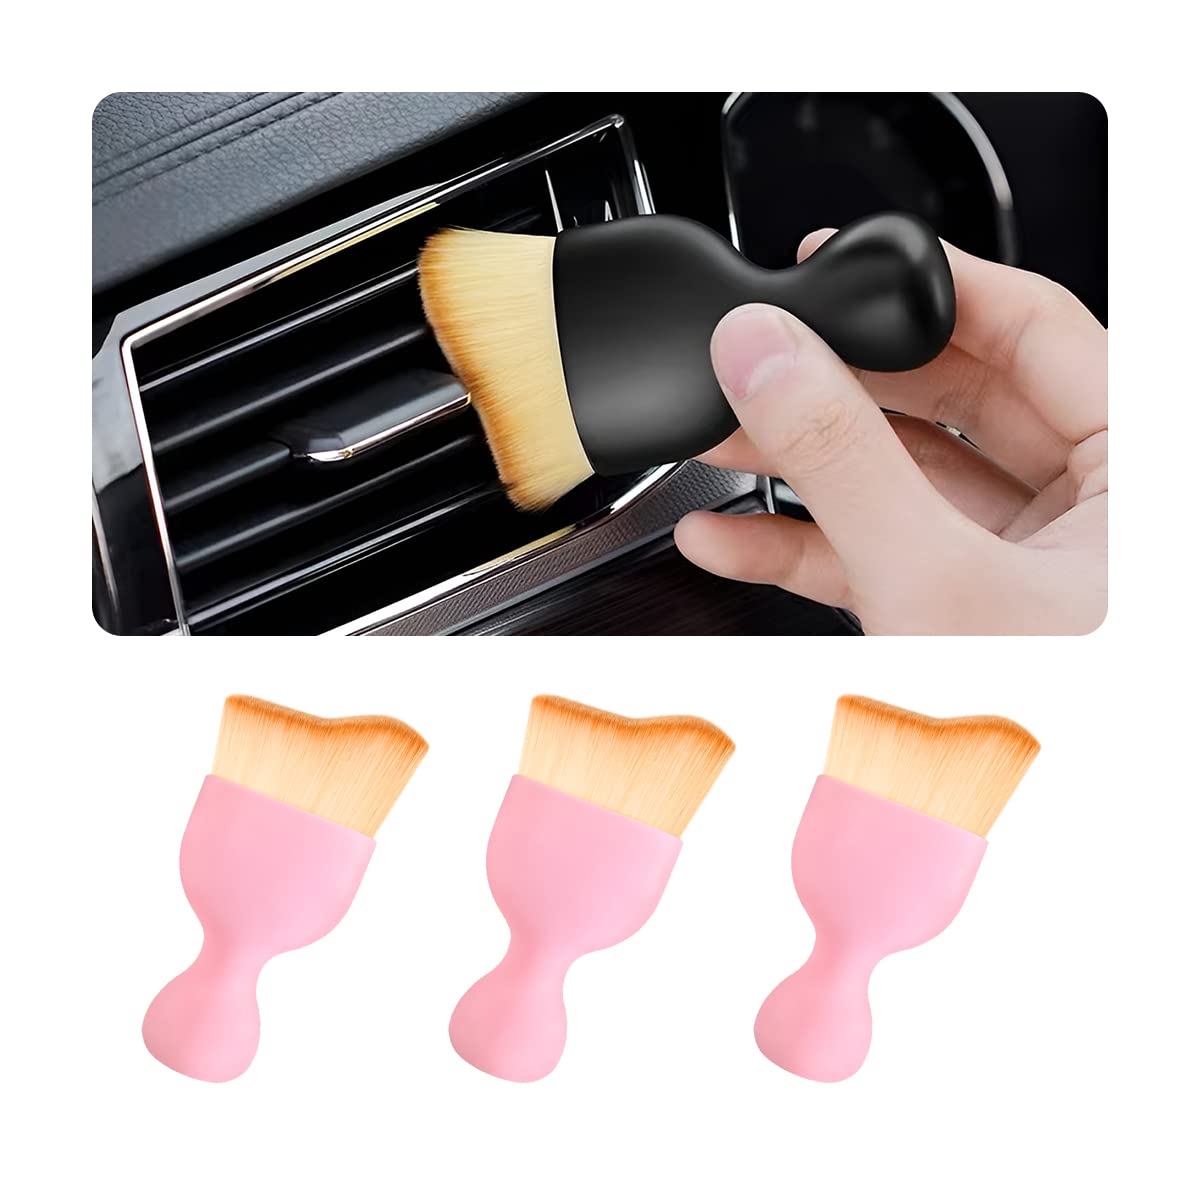 CGEAMDY 3 Stück Auto Reinigungsbürsten, Reinigung Pinsel, Auto Innenreinigung Weiche Bürste, für die Detailreinigung des on Autos Innenraums Außen Lüftungsschlitze Armaturenbrett Embleme (Rosa) von CGEAMDY